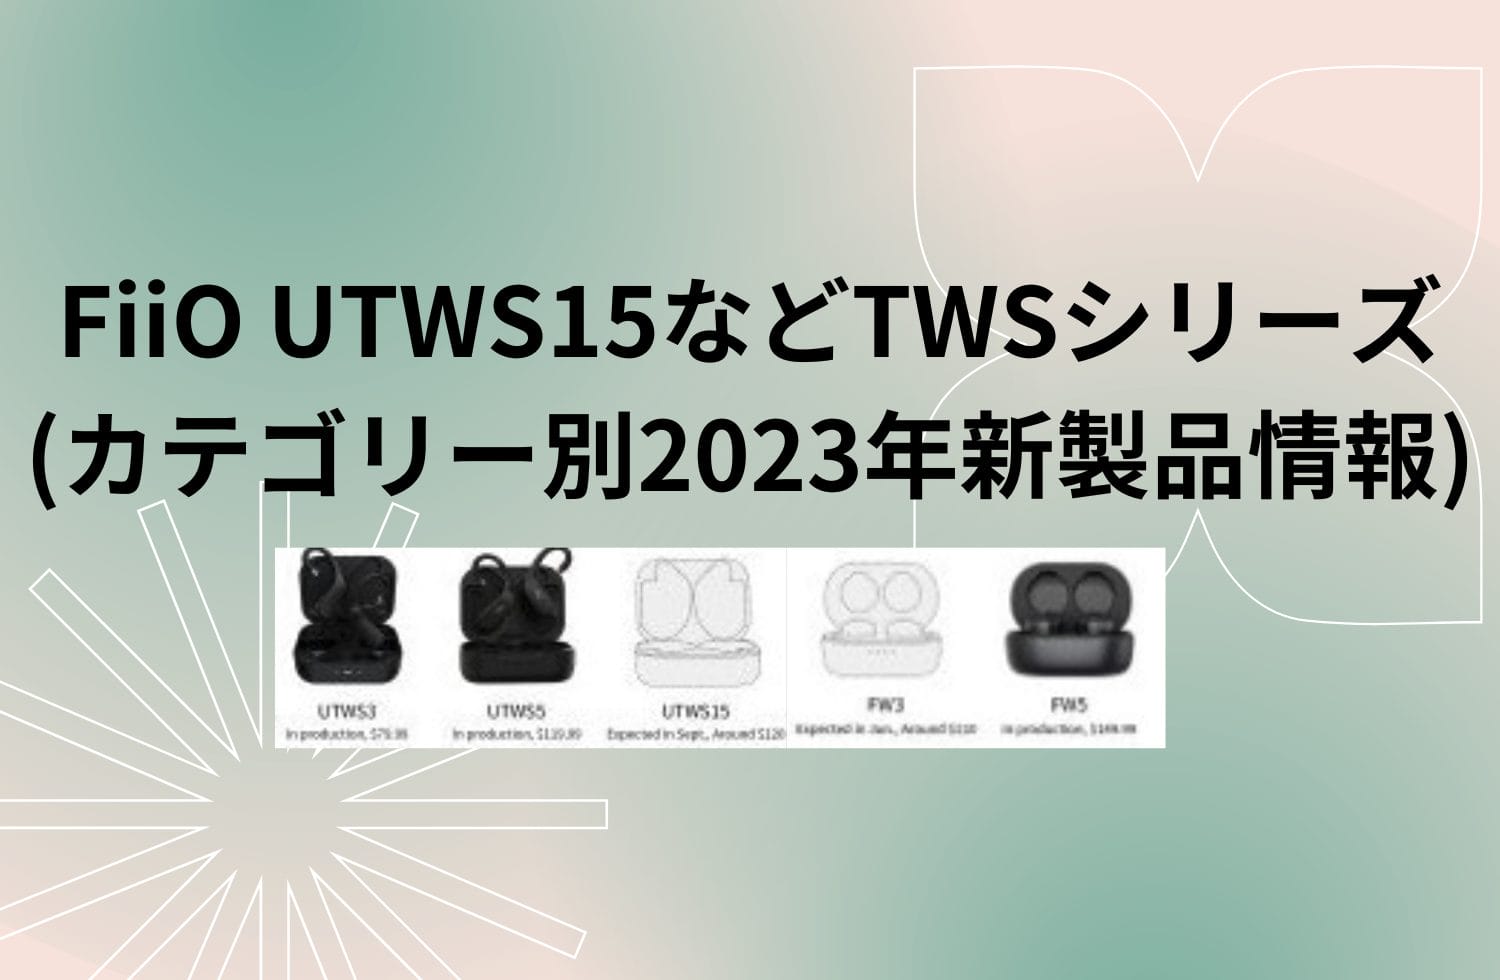 Fiio Utws15などtwsシリーズ (カテゴリー別2023年新製品情報)